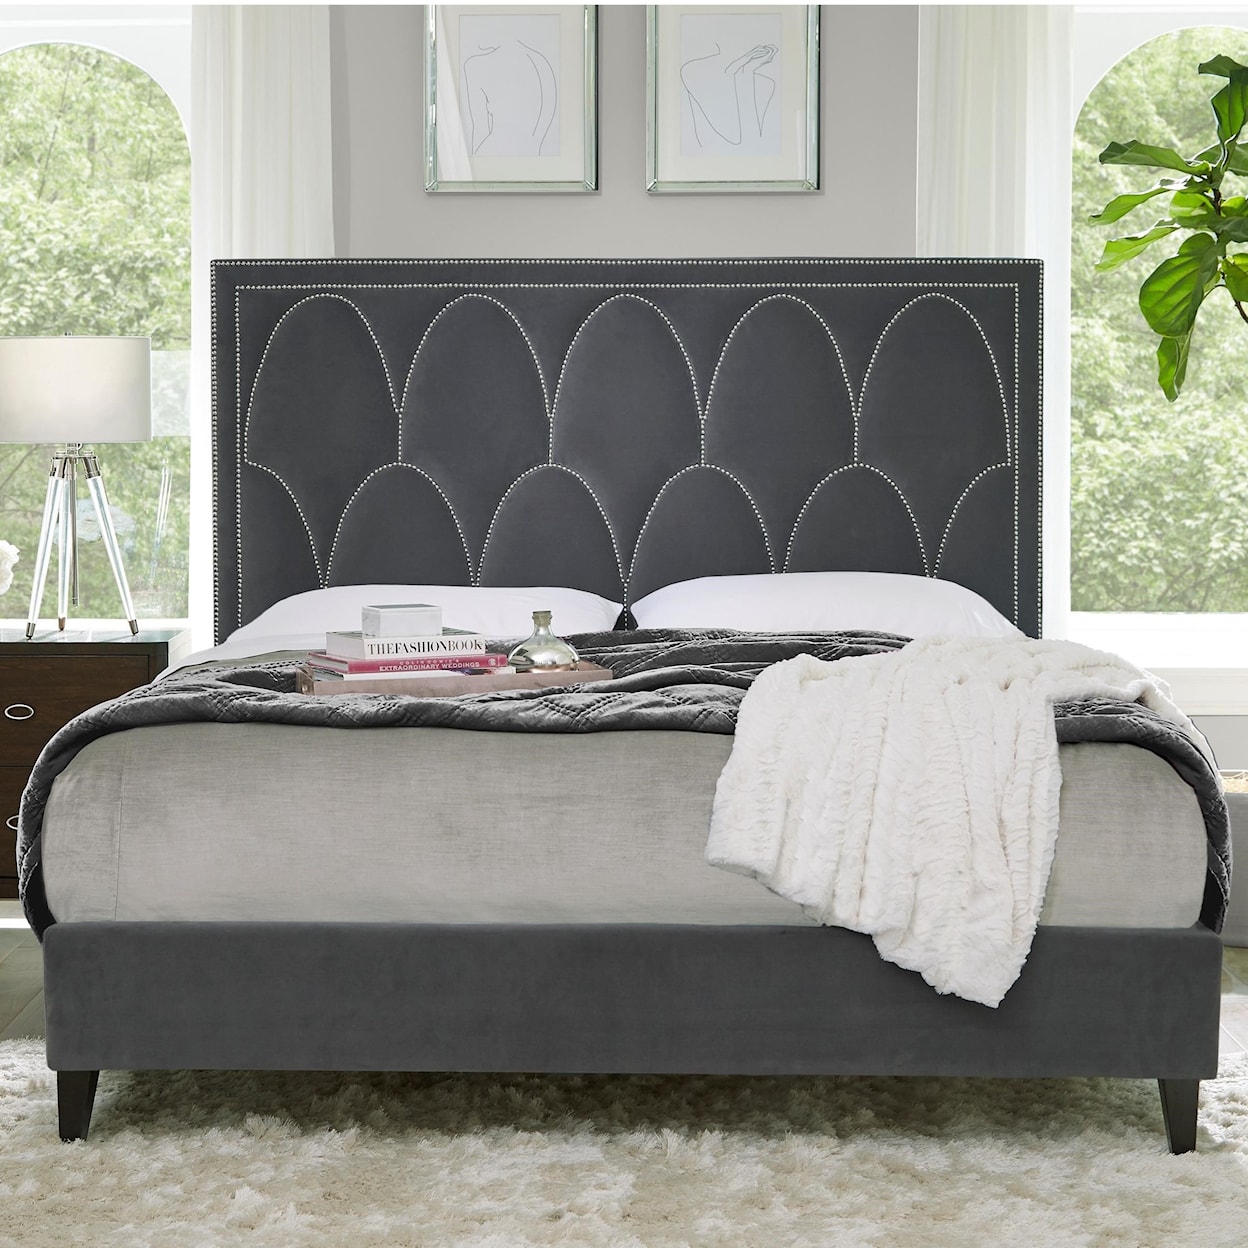 Standard Furniture Delano King Upholstered Bed